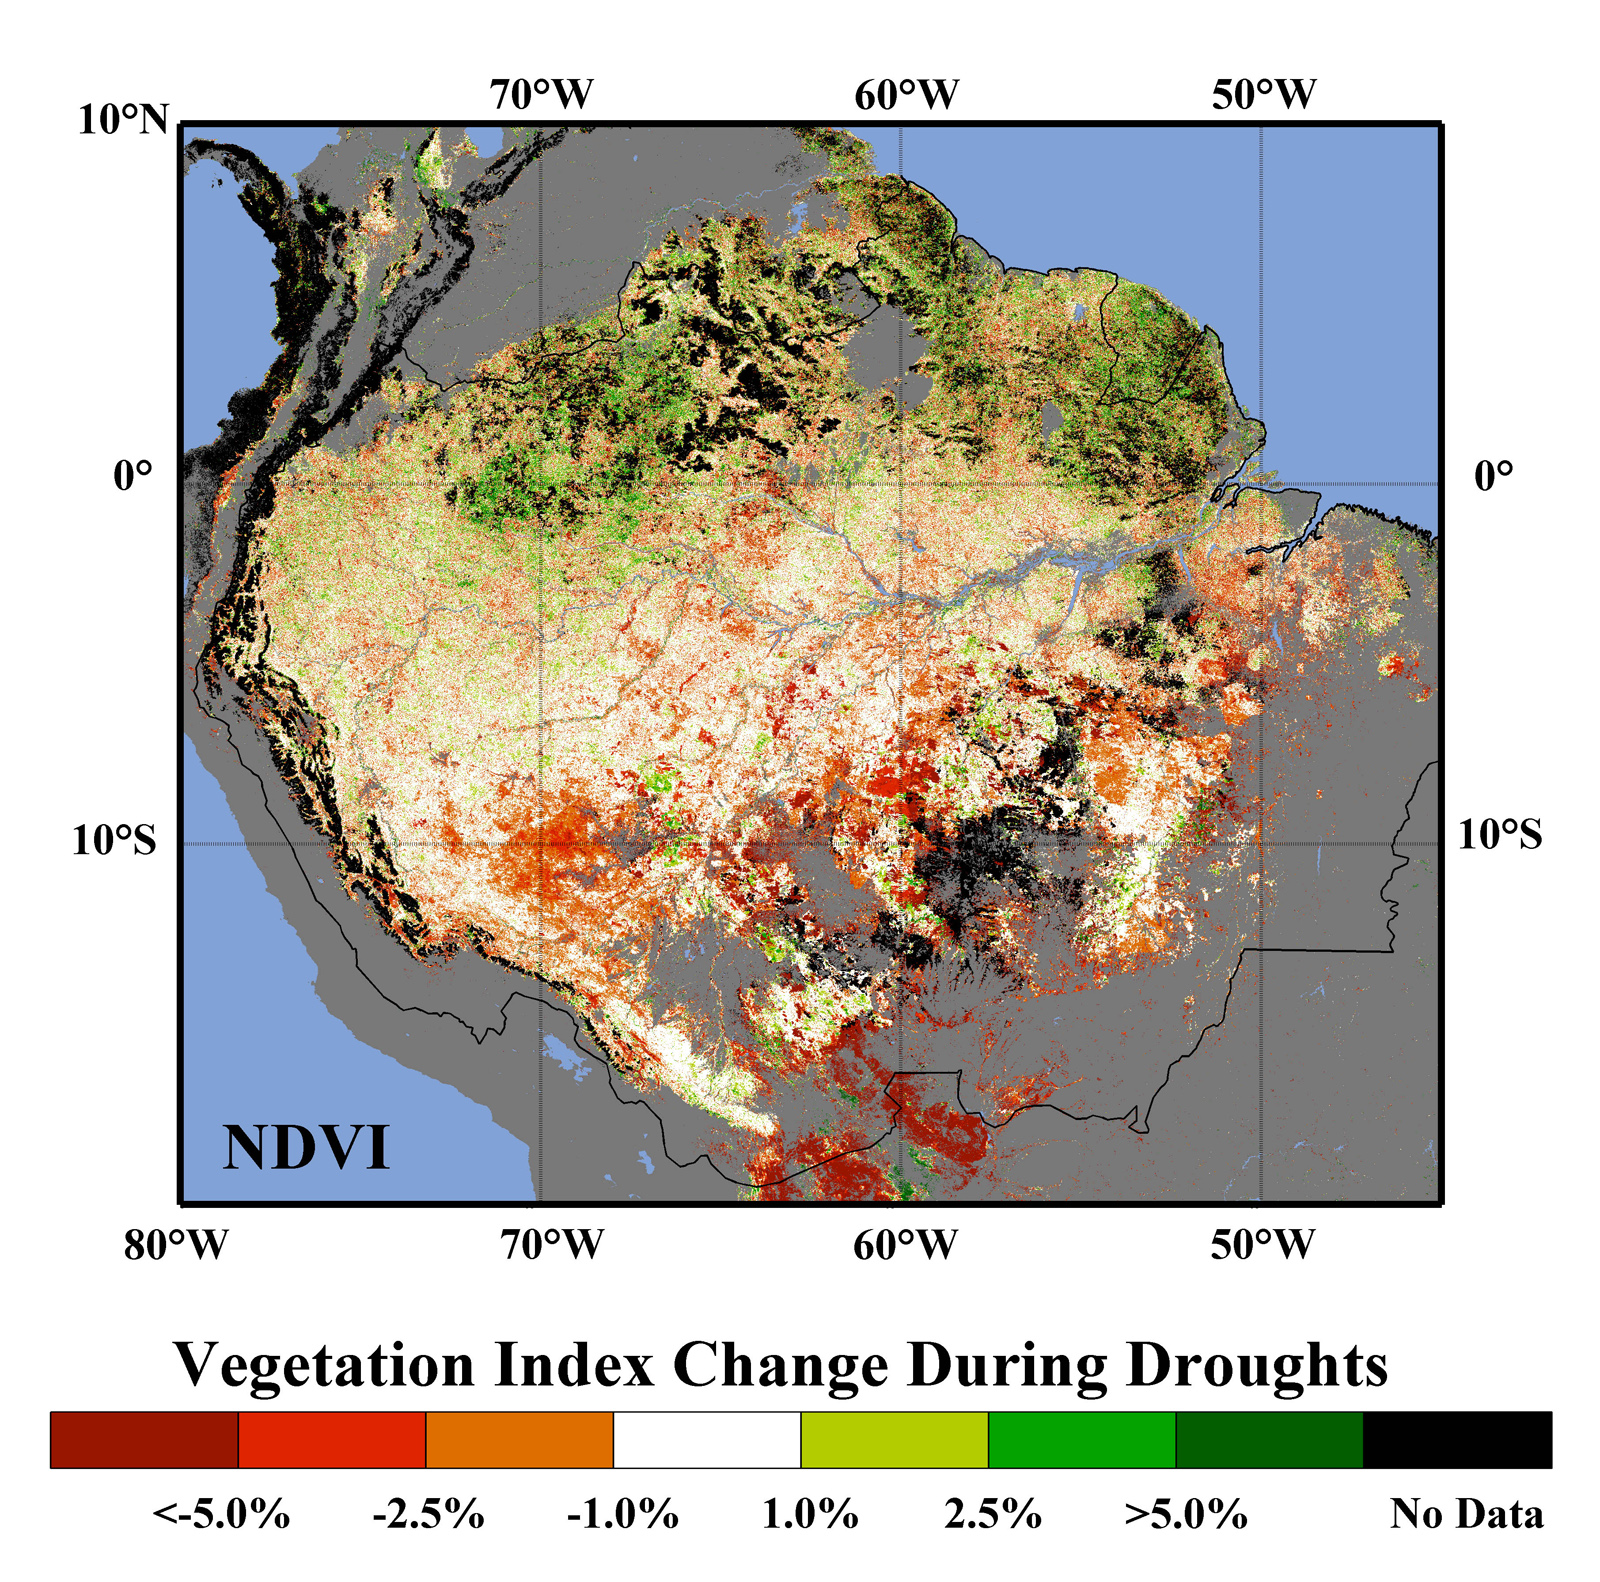 deforestation in the amazon rainforest case study